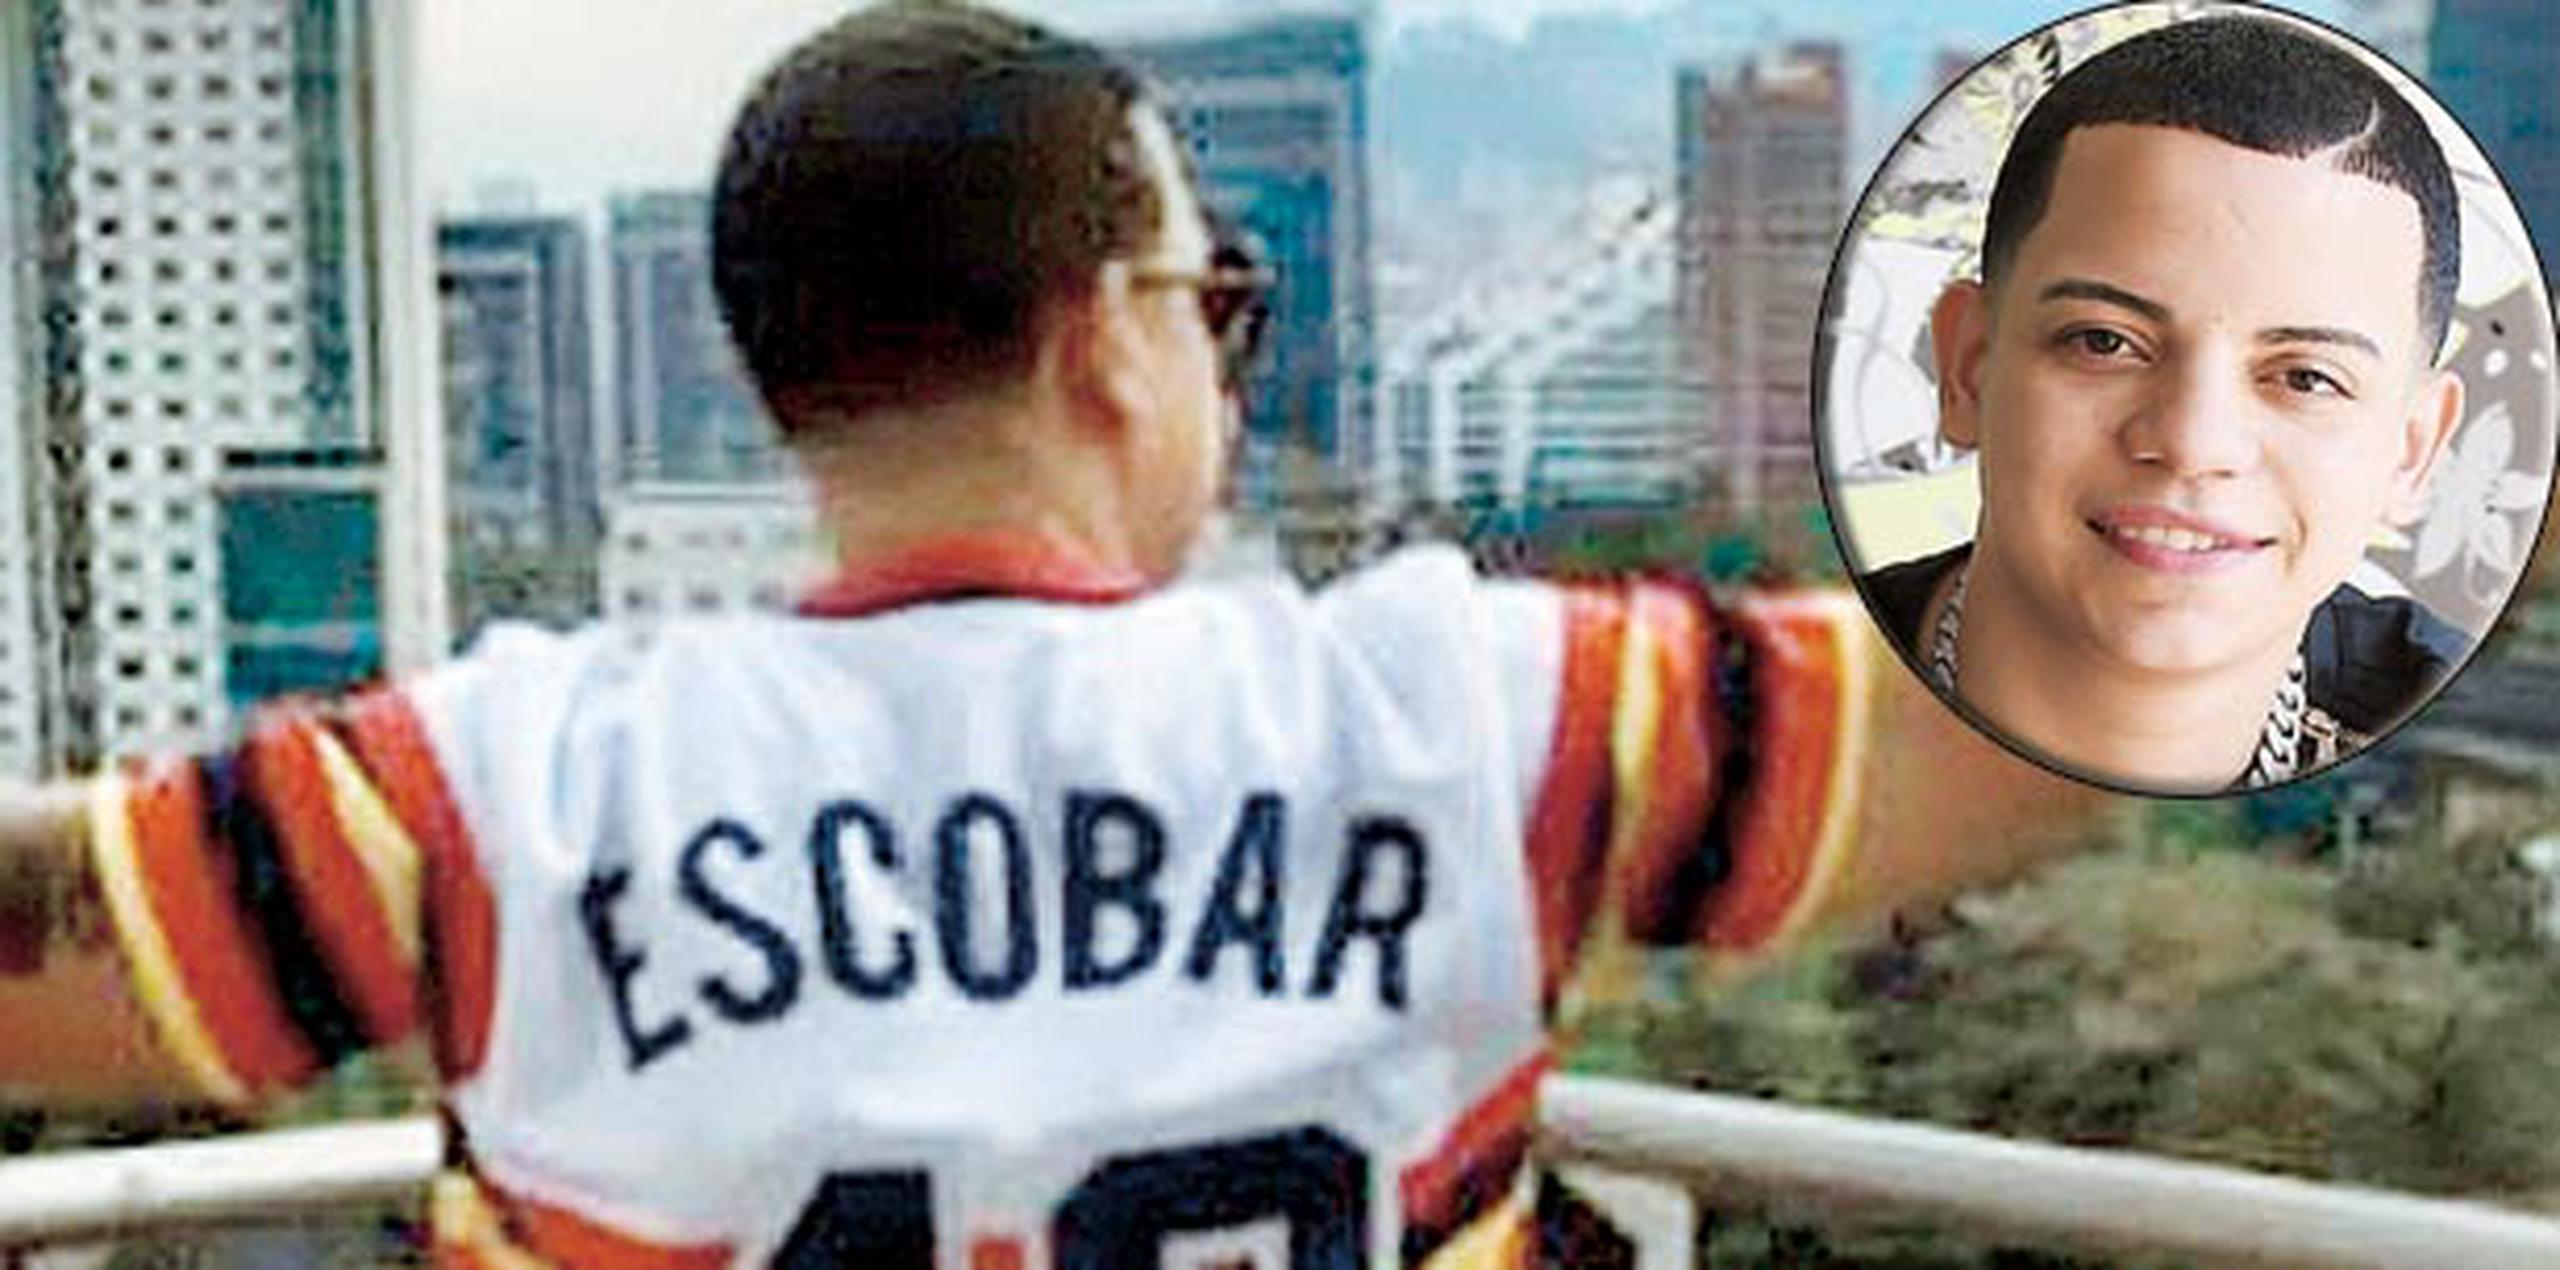 El artista llegó a una conferencia de prensa luciendo la camiseta que leía “Escobar”, la que luego se cambió por una  del festival donde cantaría.